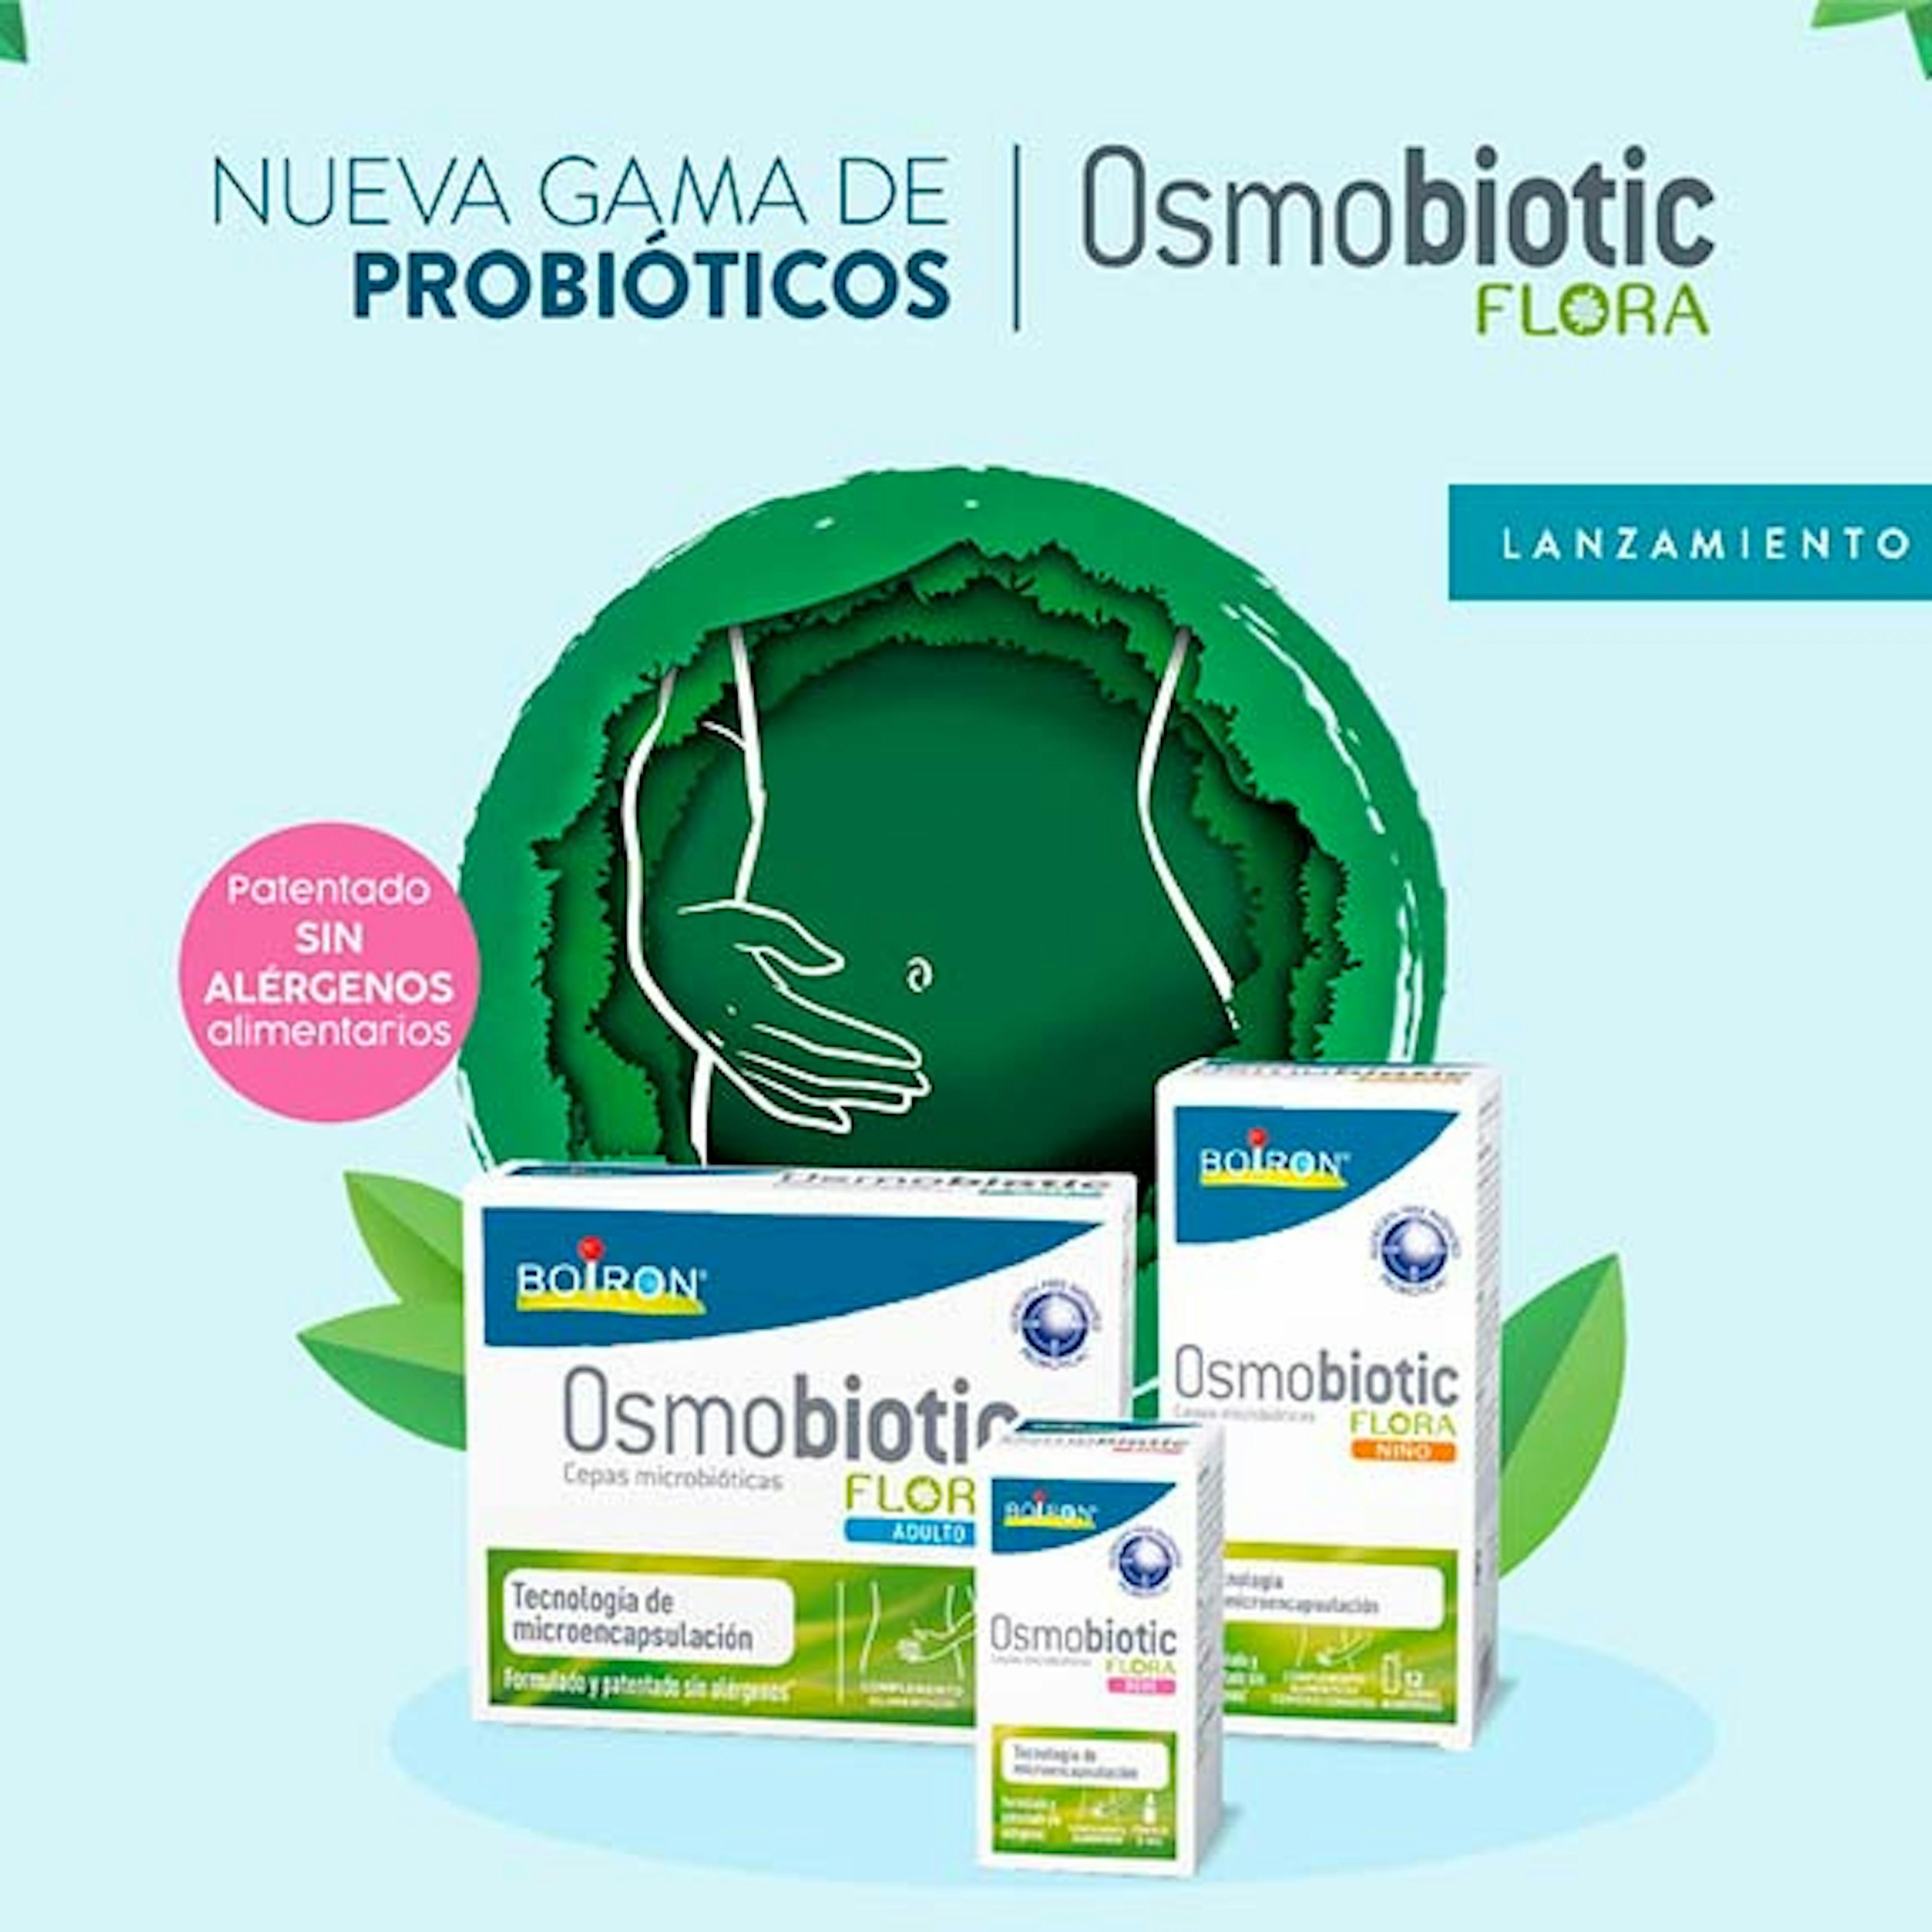 BOIRON entra en el mercado de probióticos con OSMOBIOTIC FLORA